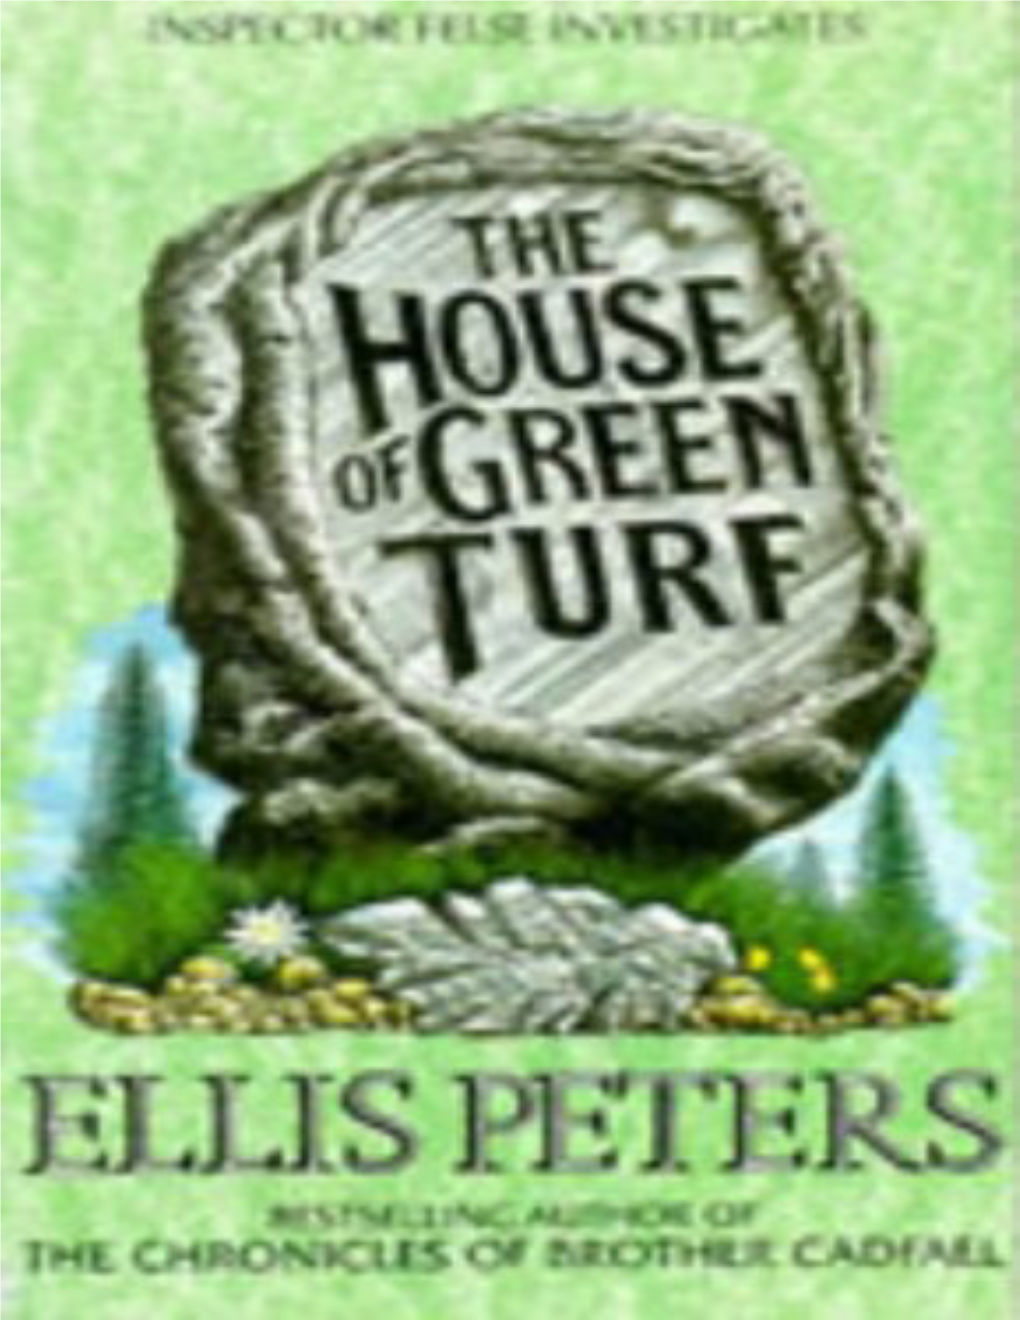 The House of Green Turf Ellis Peters